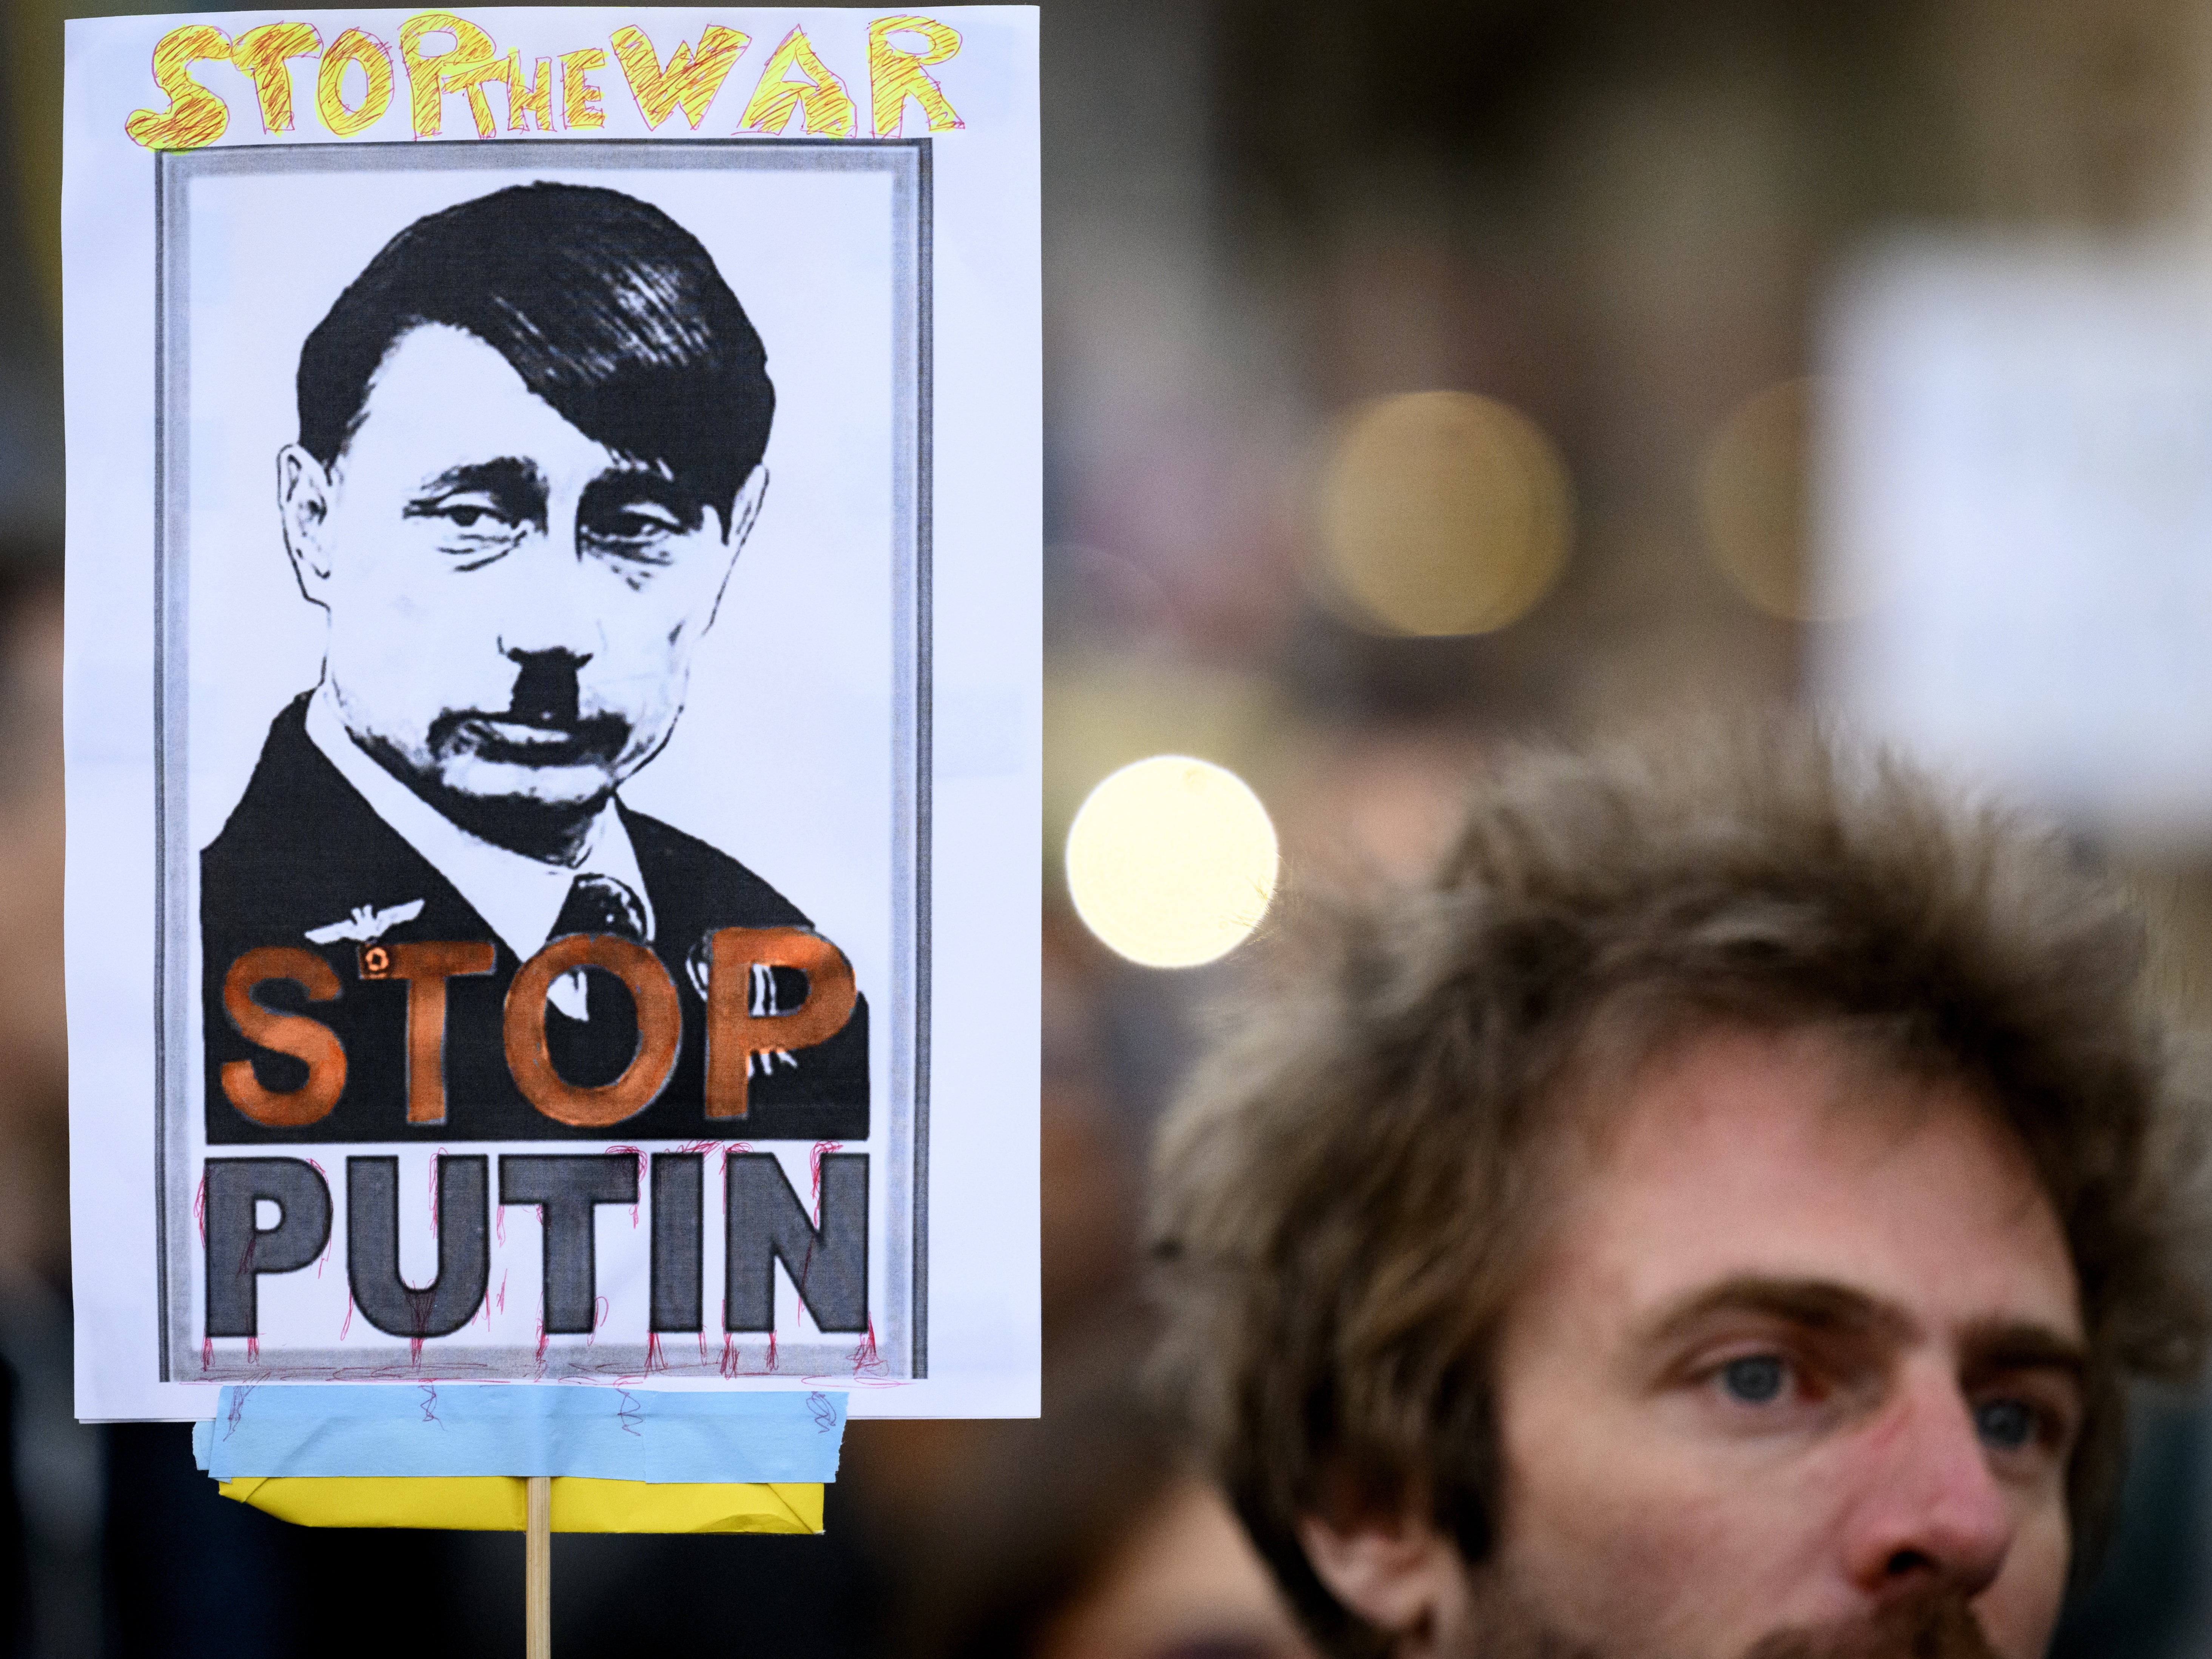 Un manifestante sostiene una pancarta que dice “Stop Putin” durante una protesta contra la invasión rusa de Ucrania en Lausanne, Suiza